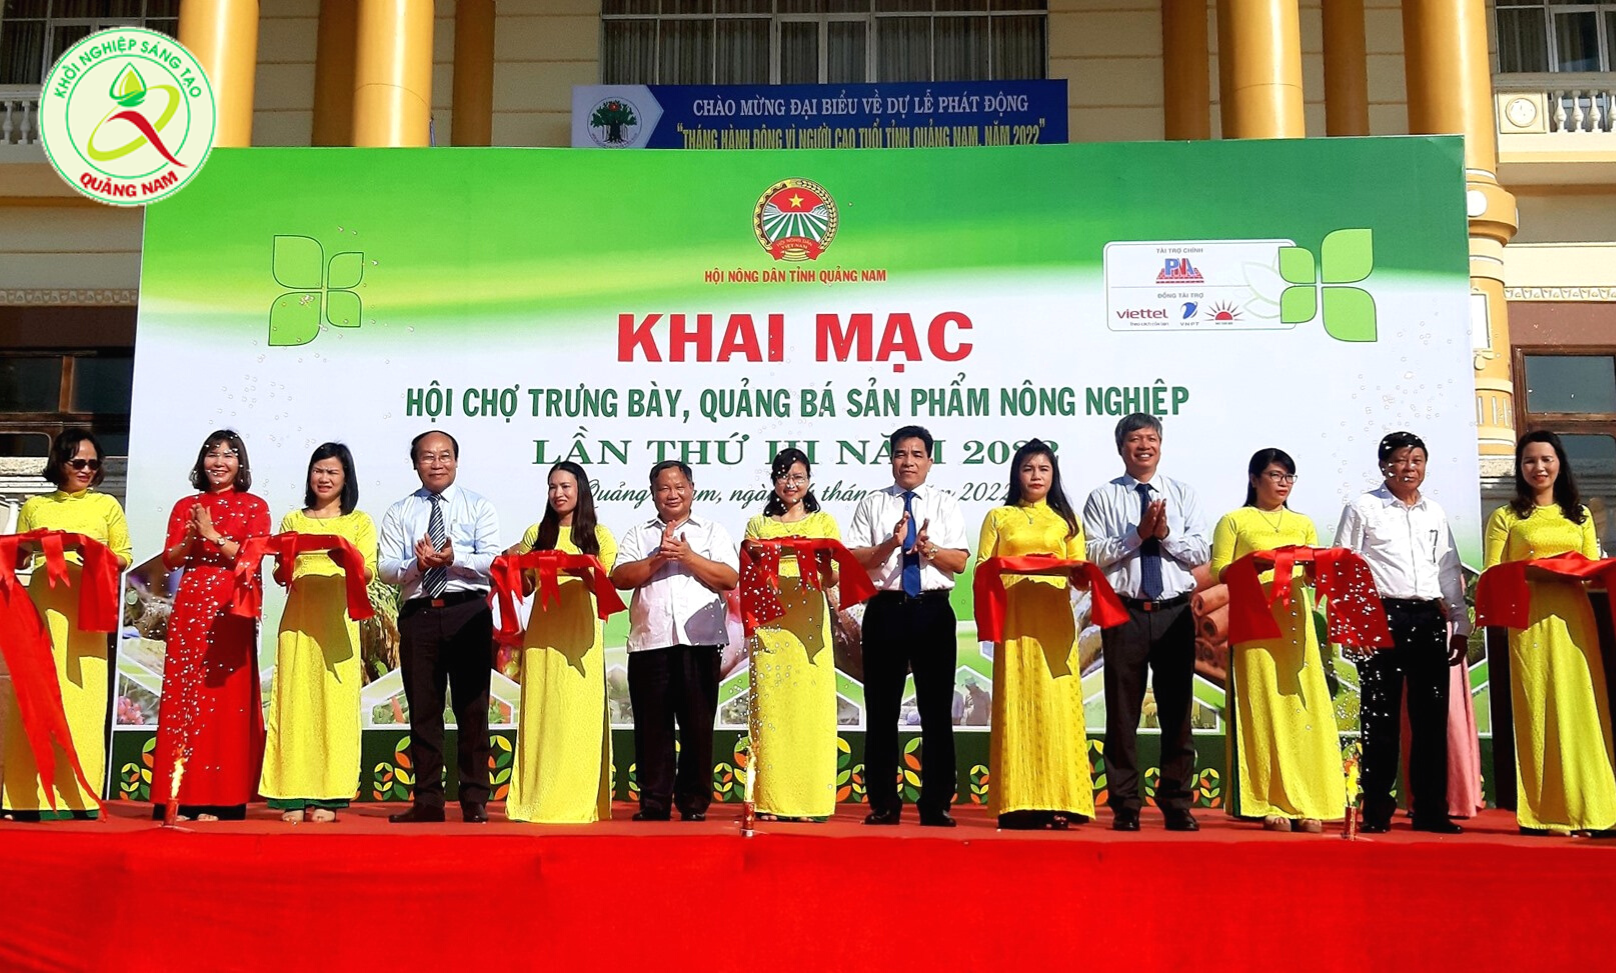 Khai mạc Hội chợ trưng bày, quảng bá sản phẩm nông nghiệp Quảng Nam lần thứ III năm 2022